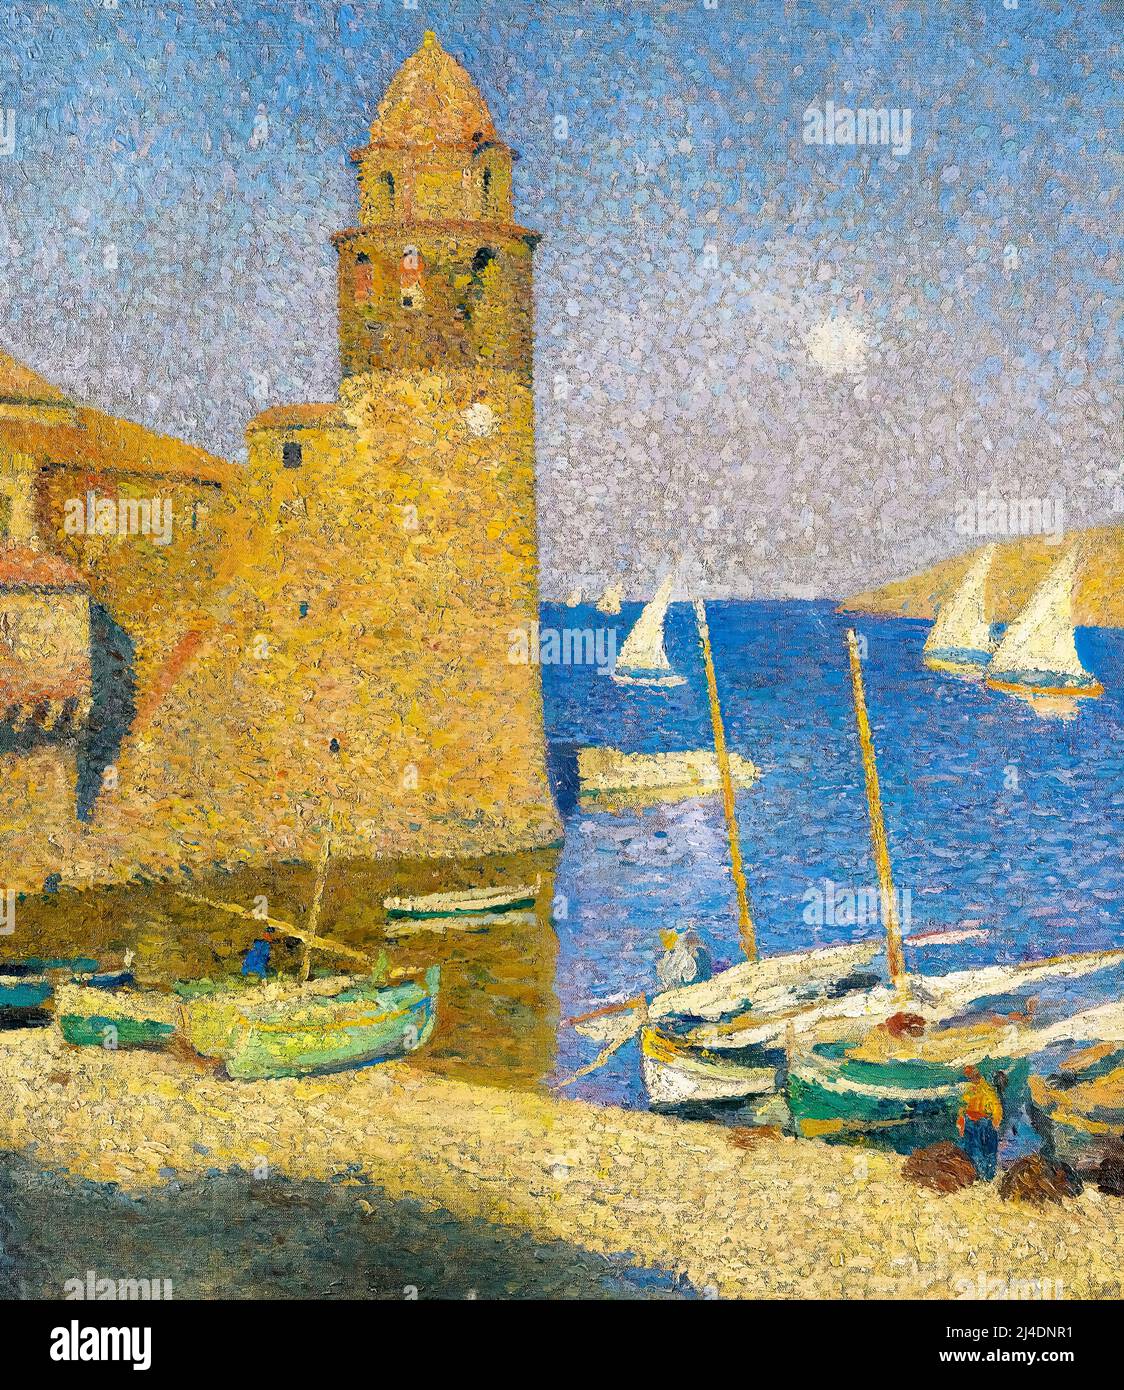 Henri Martin, la Tour de Collioure, Moonrise, peinture à l'huile sur toile, 1923-1924 Banque D'Images